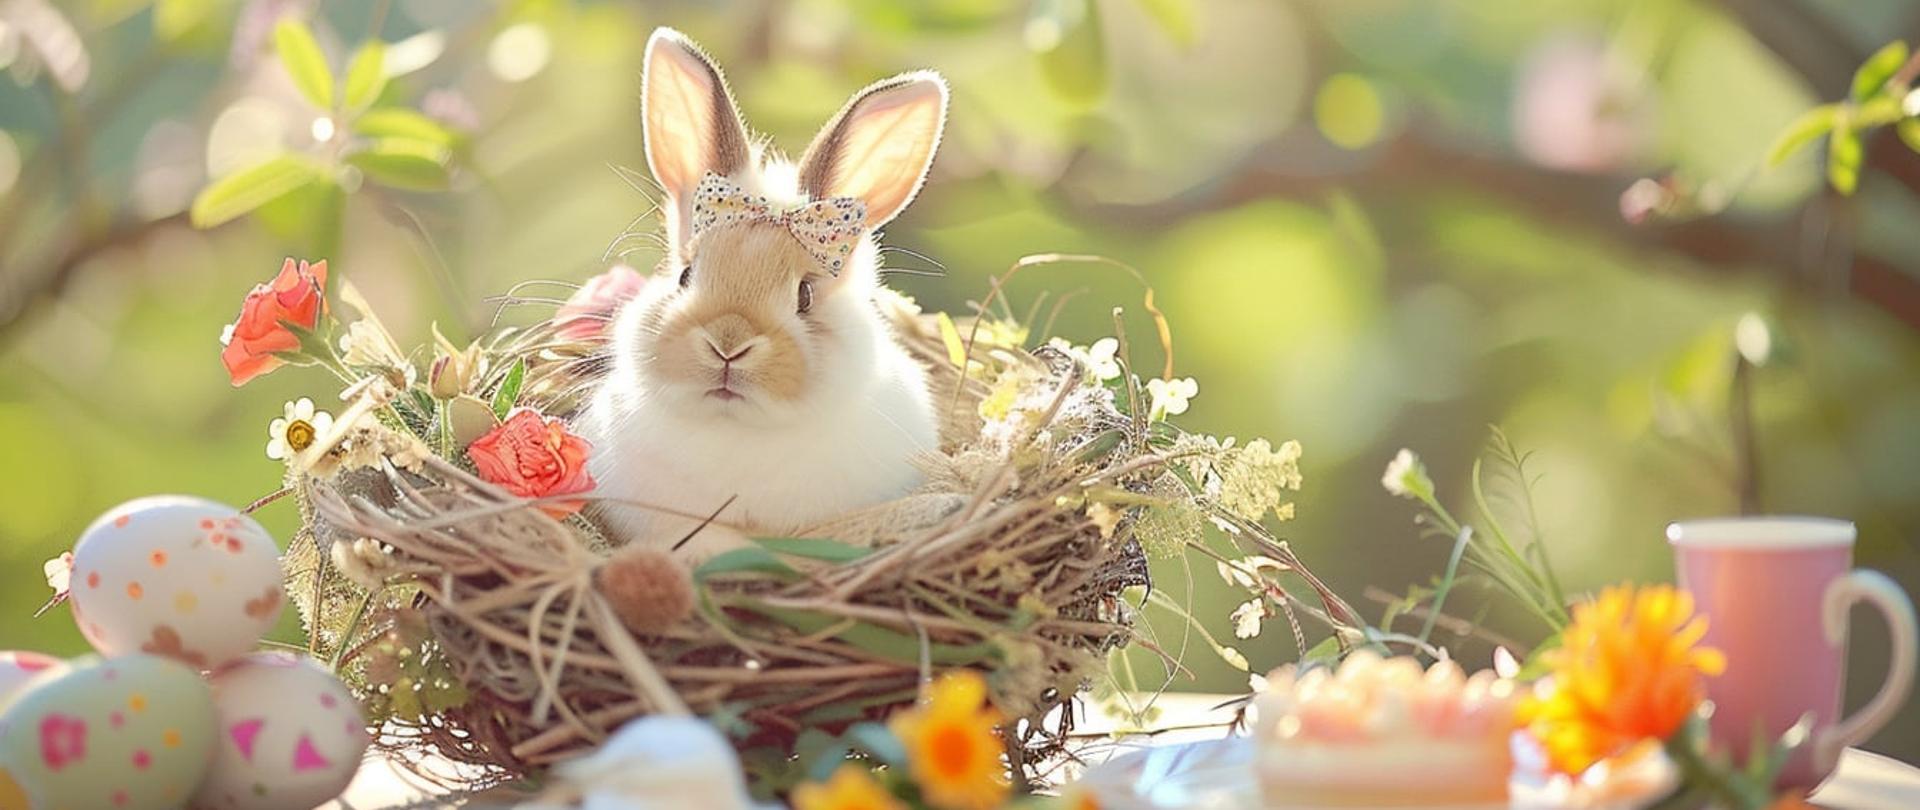 Życzenia Wielkanocne stół świąteczny z wielkanocnymi ozdobami, żywym królikiem w koszyku na tle wiosennego ogrodu.